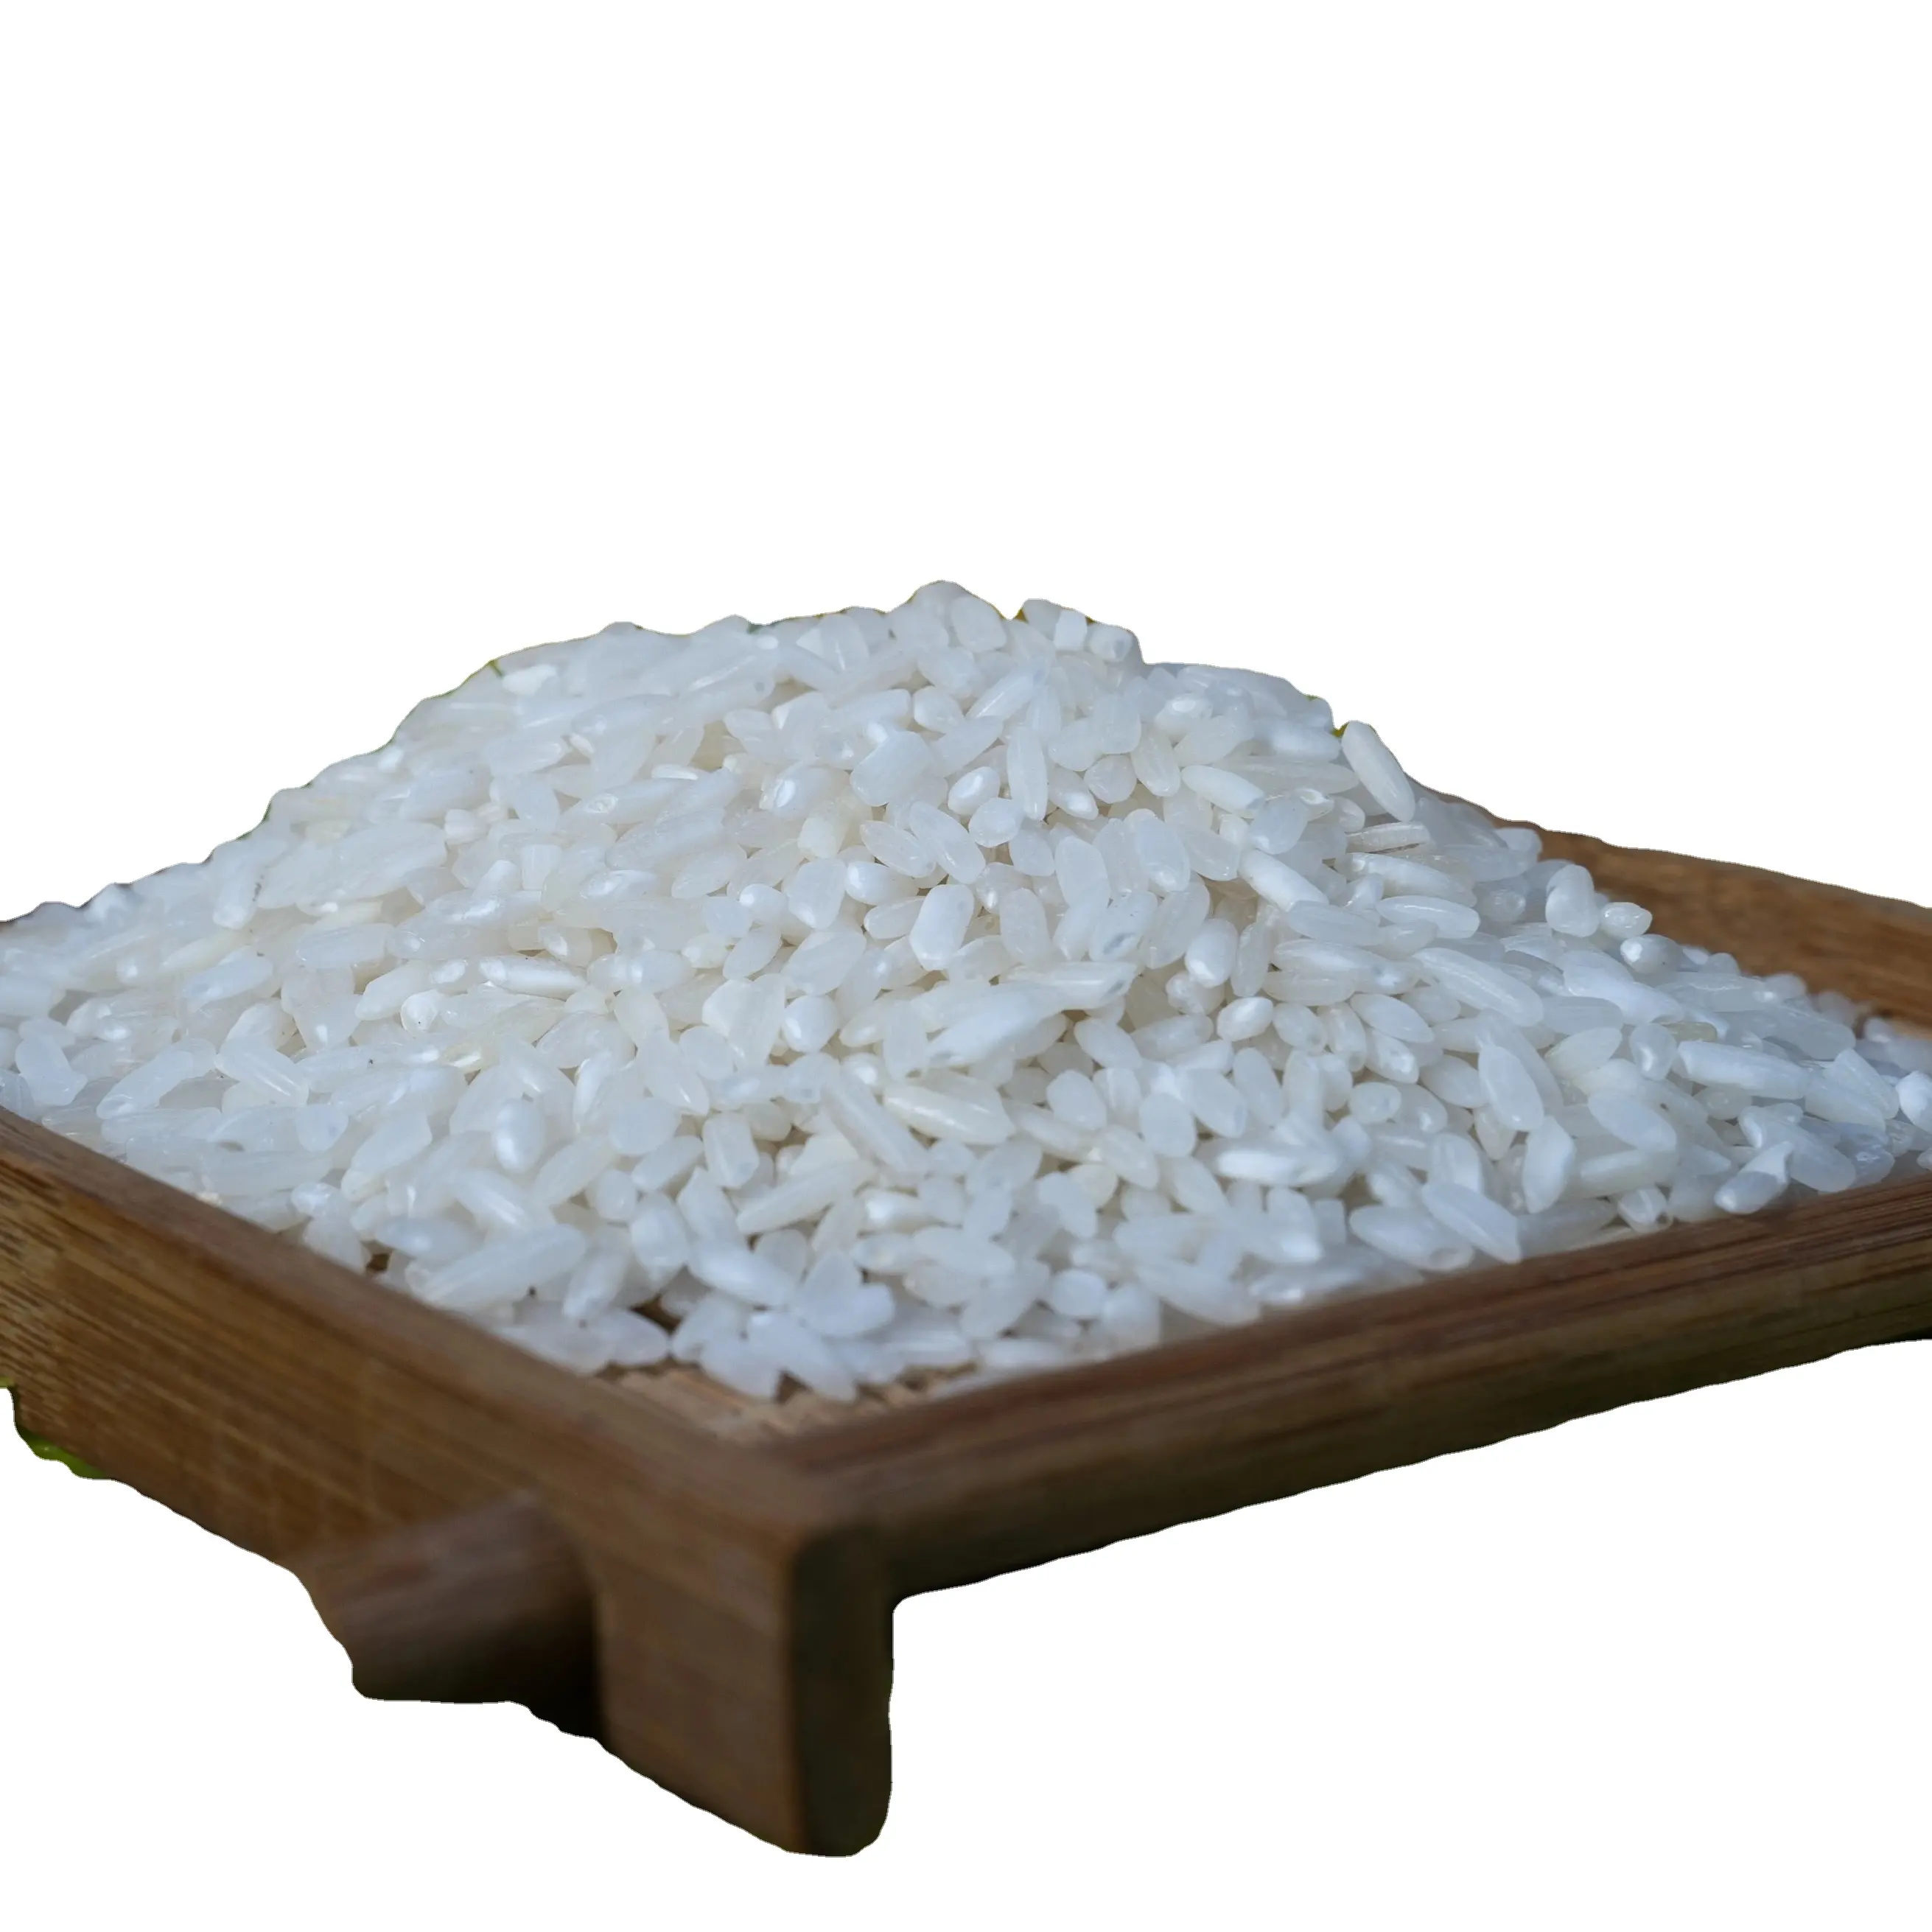 Gạo trắng hạt dài Việt Nam cao cấp-5% vỡ: Vụ Mới, kết cấu cứng, bán chạy nhất với thời hạn sử dụng 24 tháng, gạo Việt Nam